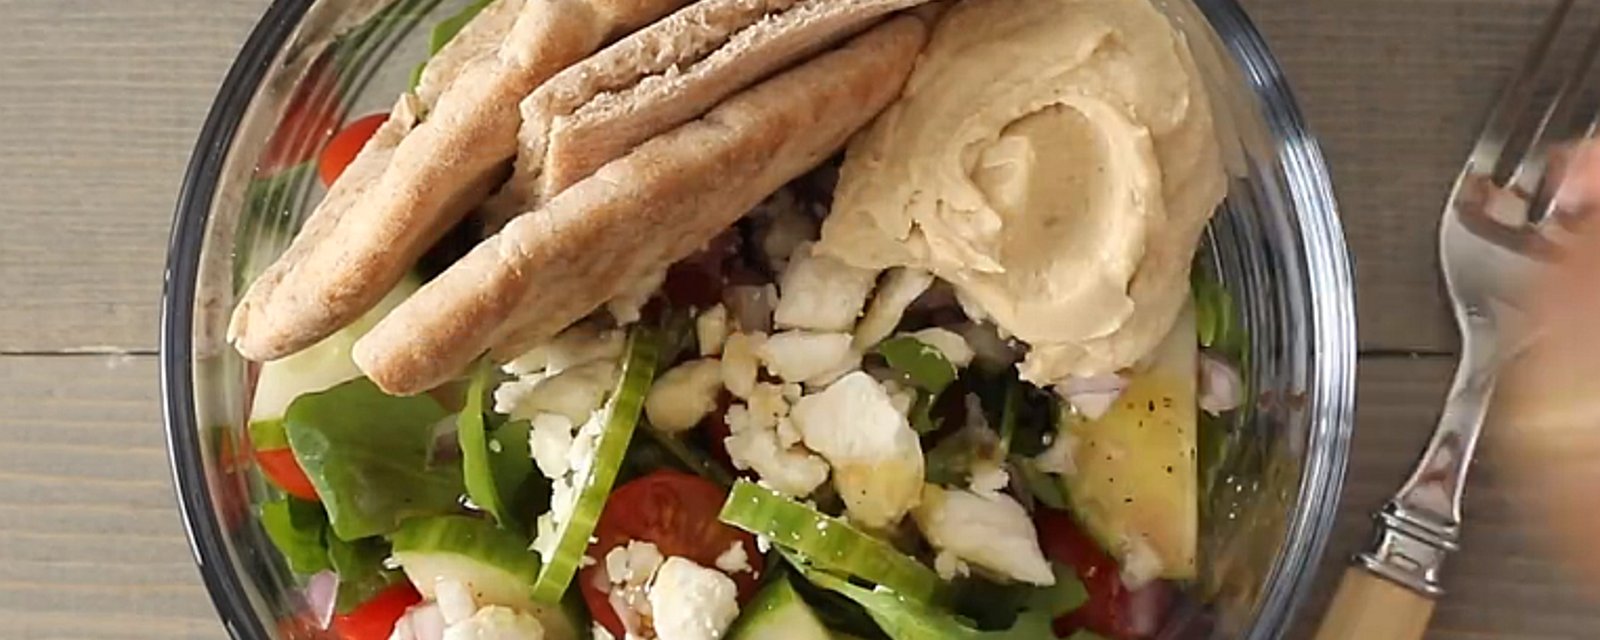 Salade grecque servie avec hummus, parfaite pour un lunch santé